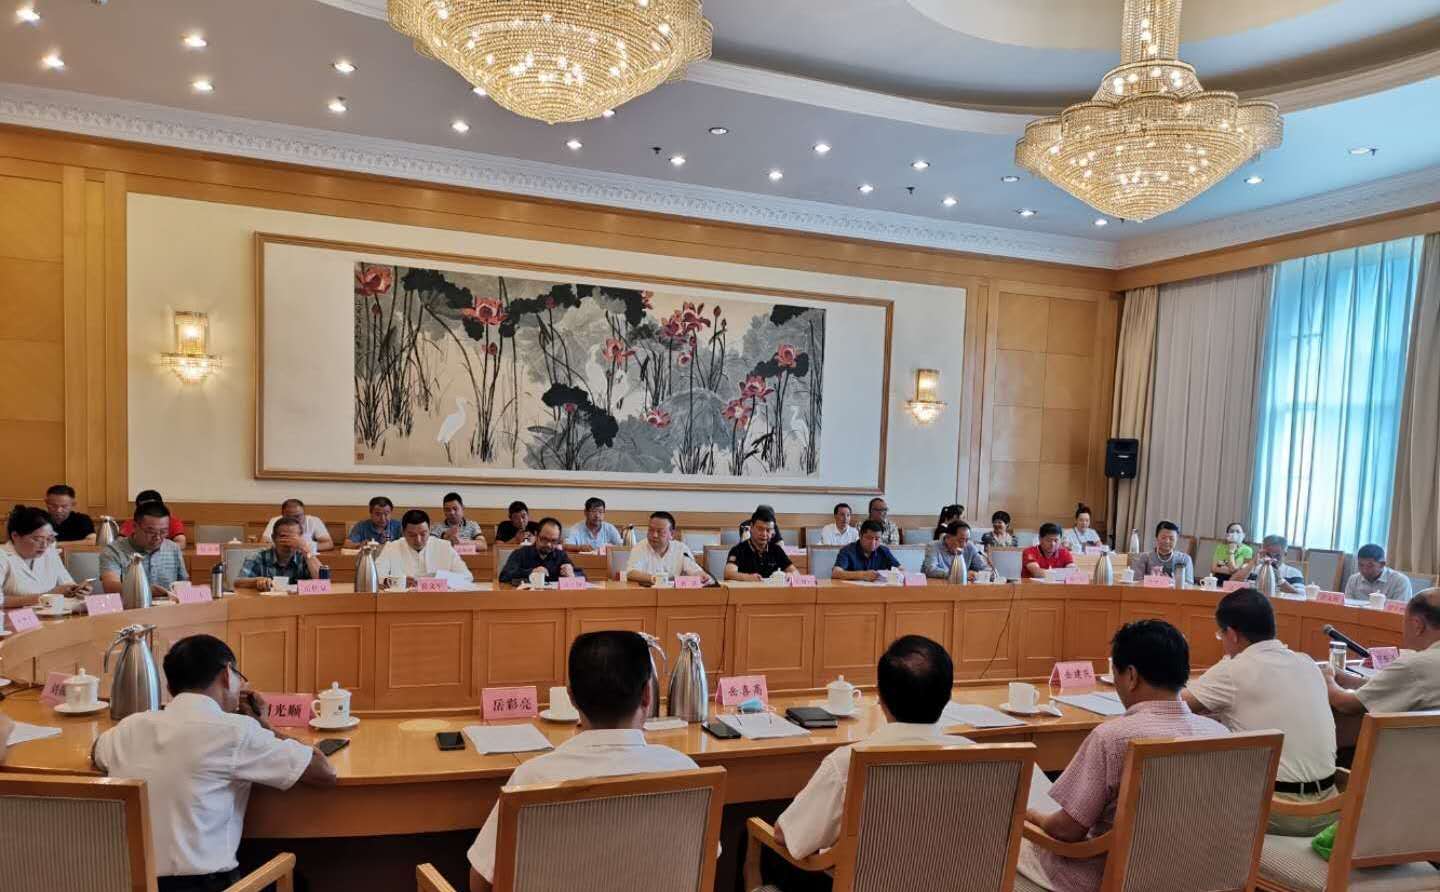 岳飞思想研究会第六届六次会议在济南召开